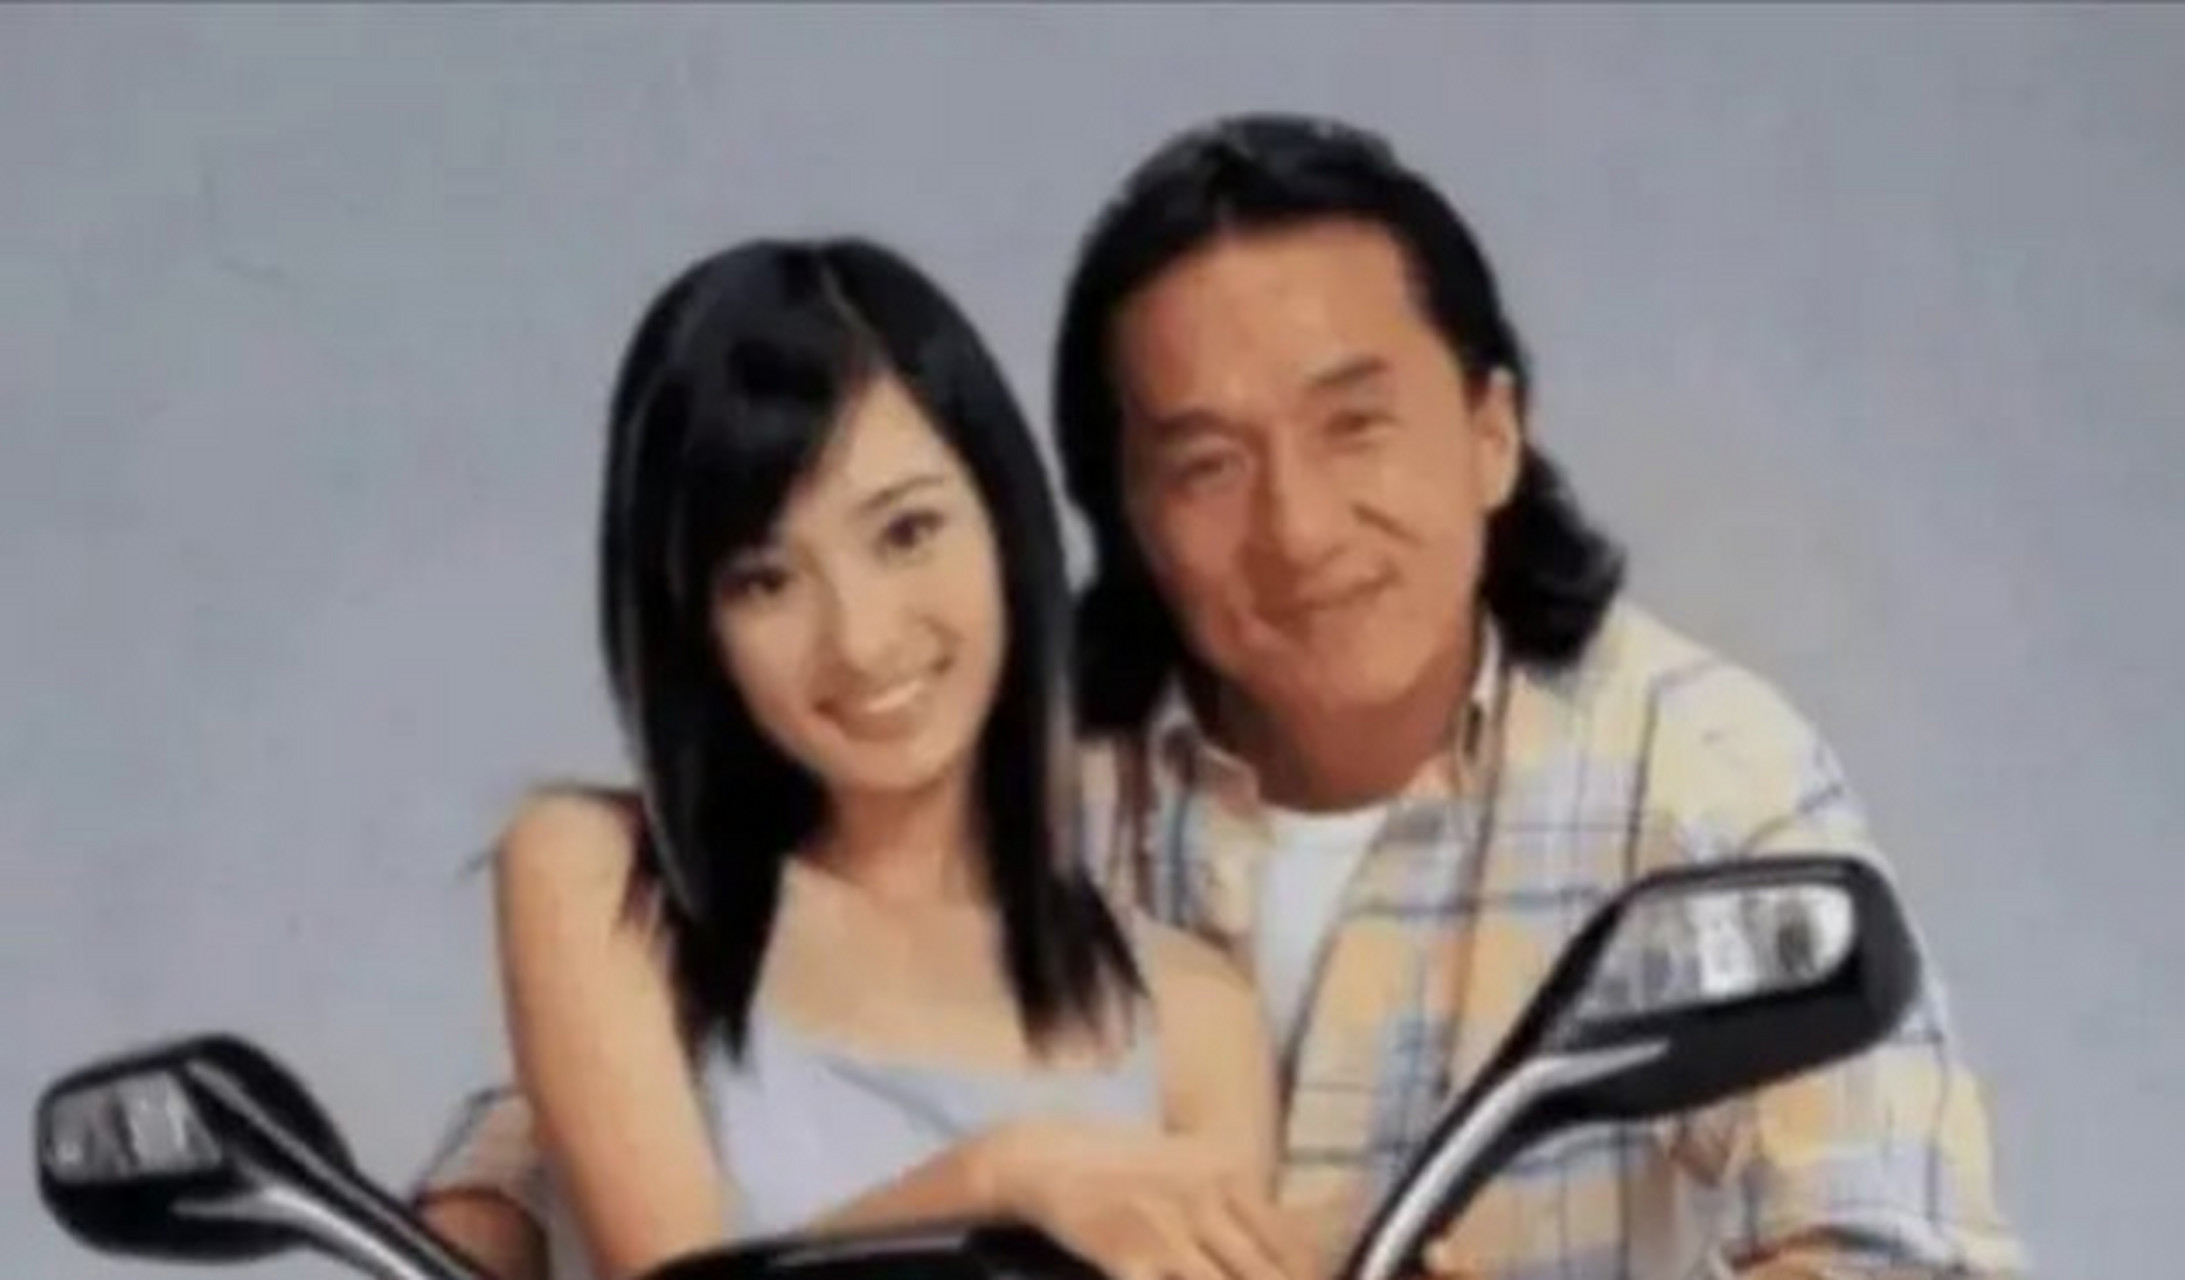 2003年,49岁的成龙和17岁的杨幂拍了一个机车广告,成龙拿到了50万